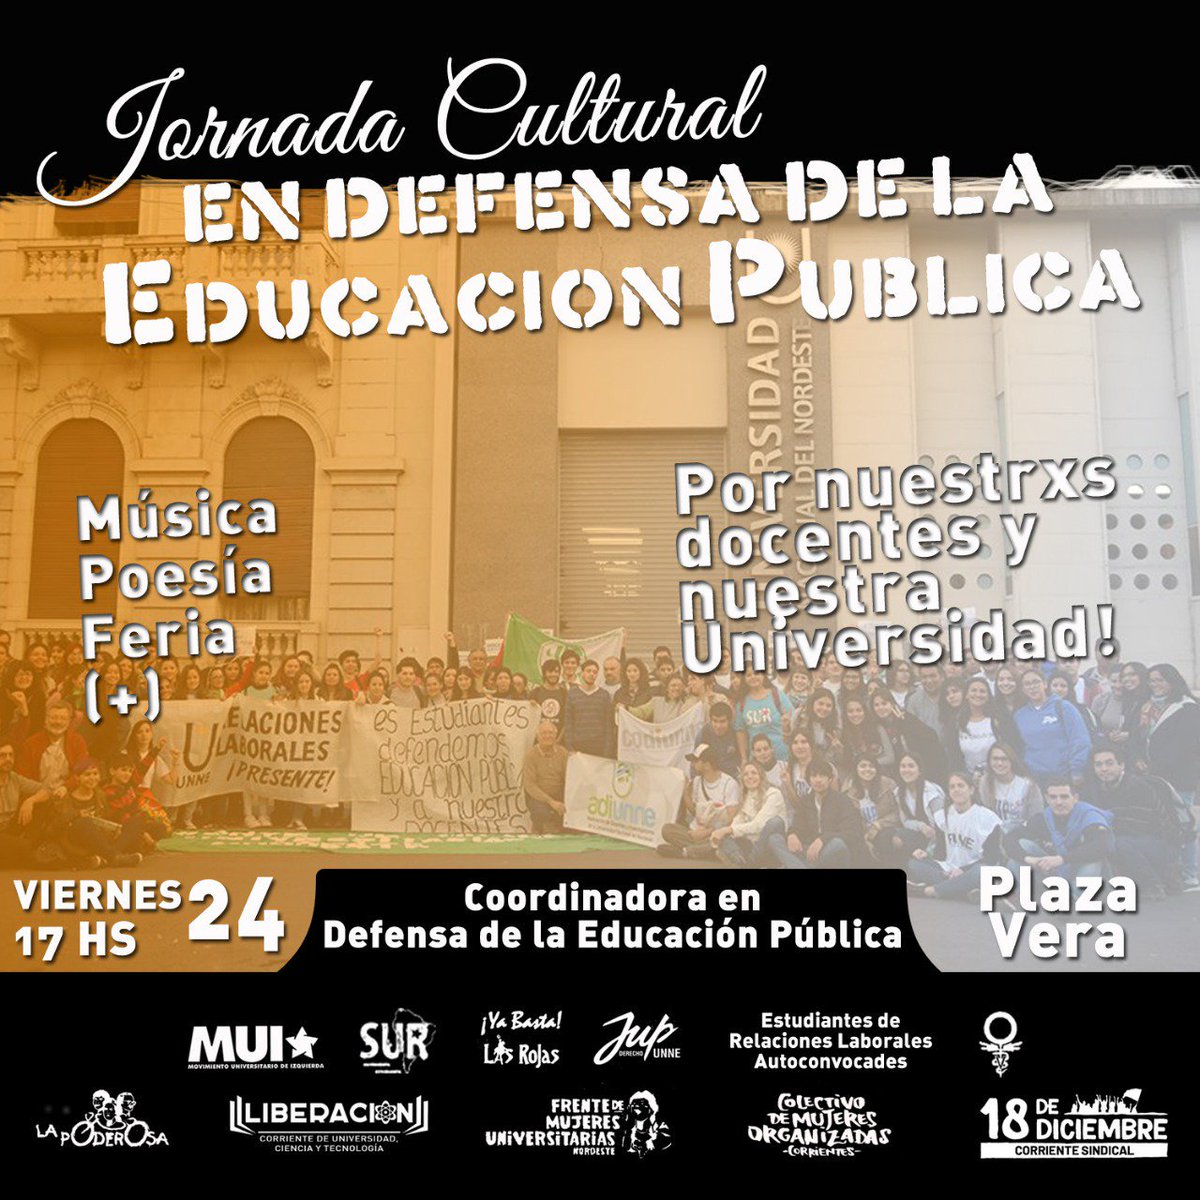 Los docentes universitarios siguen de paro en todo el país. Mañana en Corrientes se realizará una jornada cultural en defensa de la educación pública. Apoyemos el reclamo de los docentes hasta que nos escuchen.
Rompamos el cerco mediático.
#SinEducacionNoHayFuturo